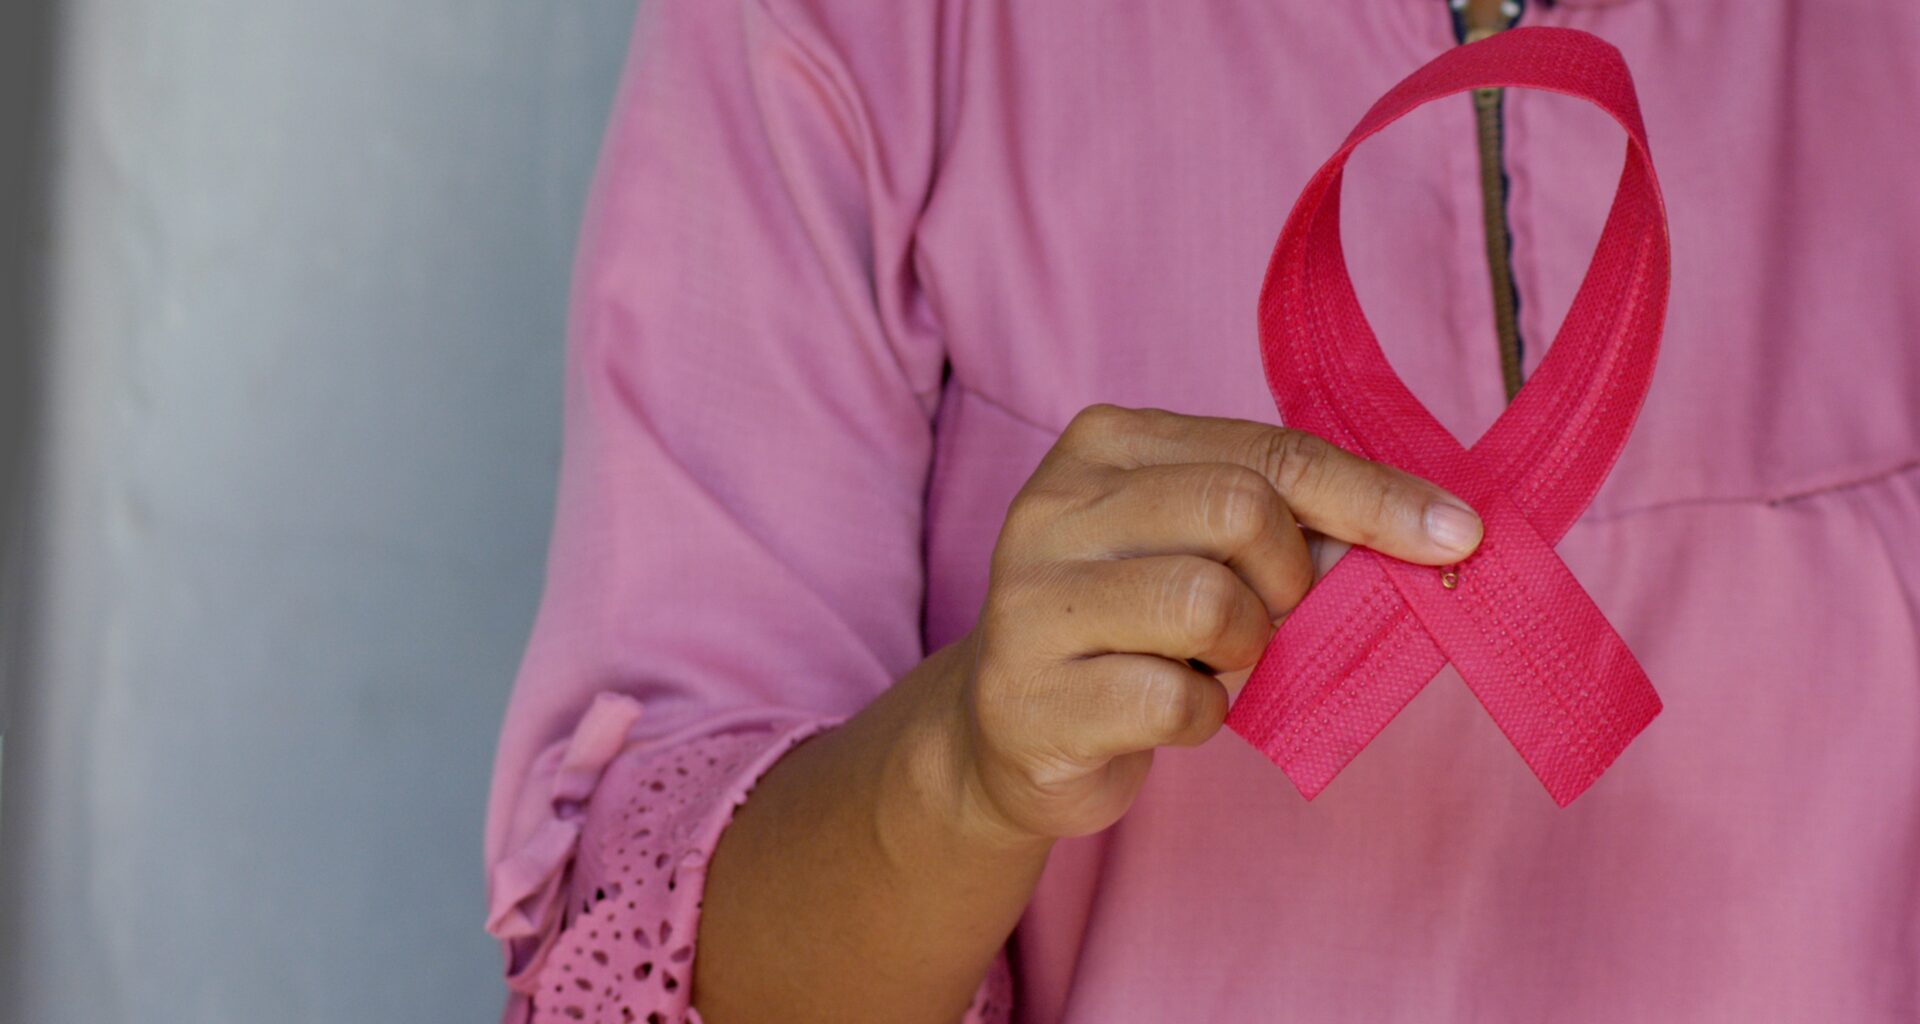 Octubre: mes de concientización sobre el cáncer de mama